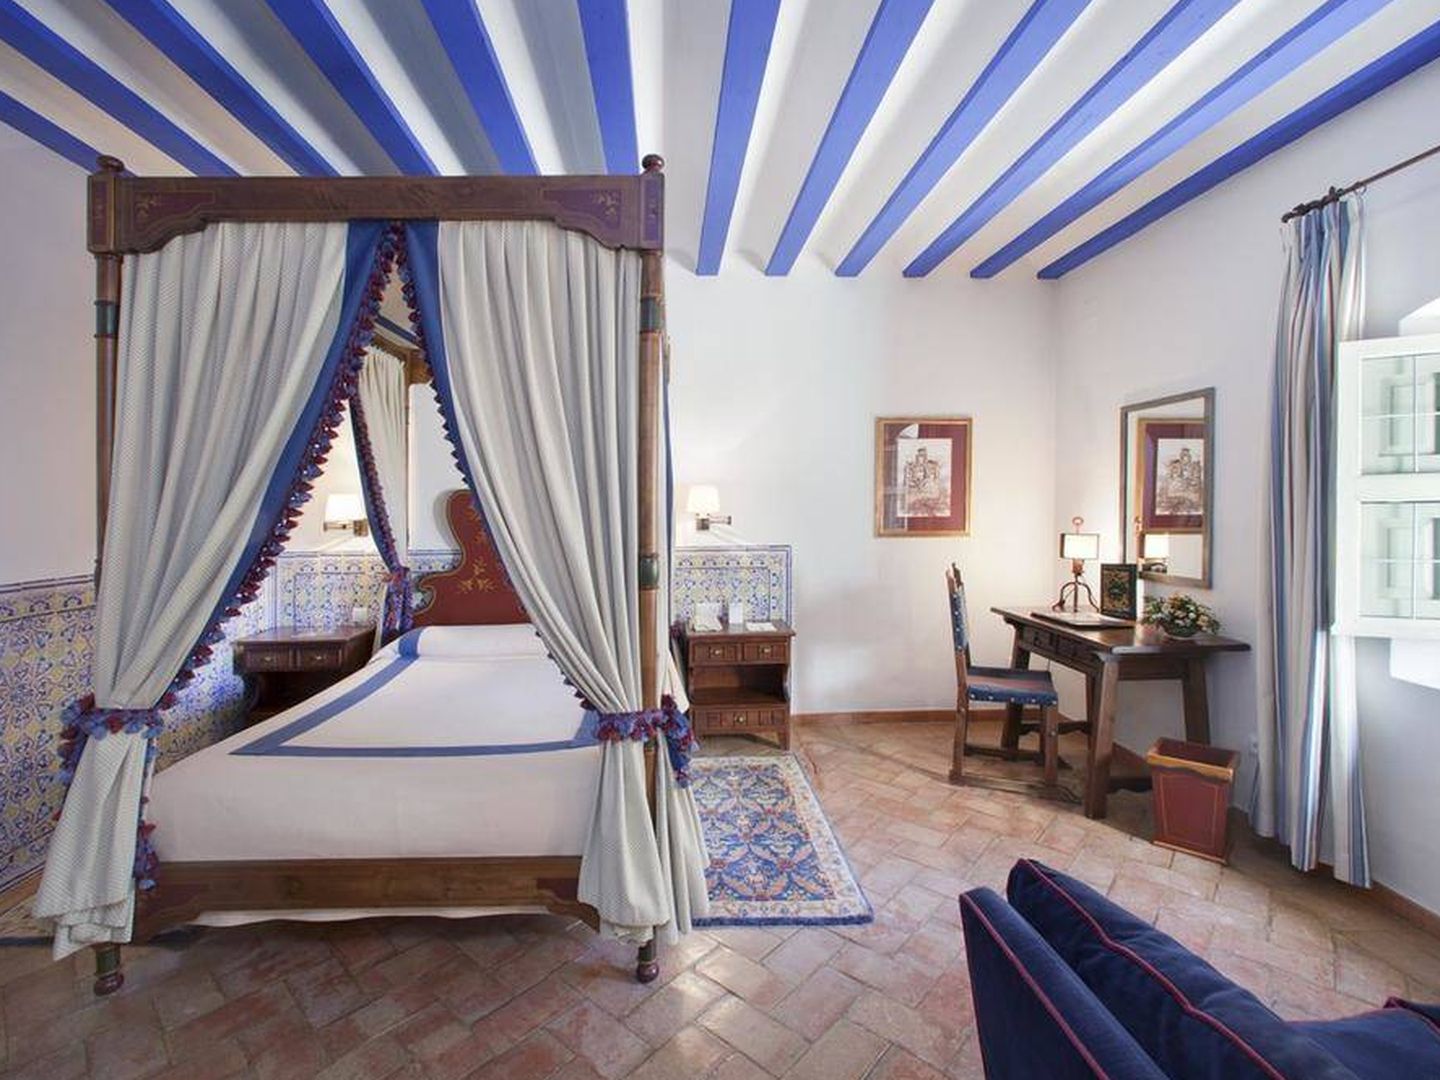 Una habitación del Parador de Turismo, un antiguo convento del siglo XVI.